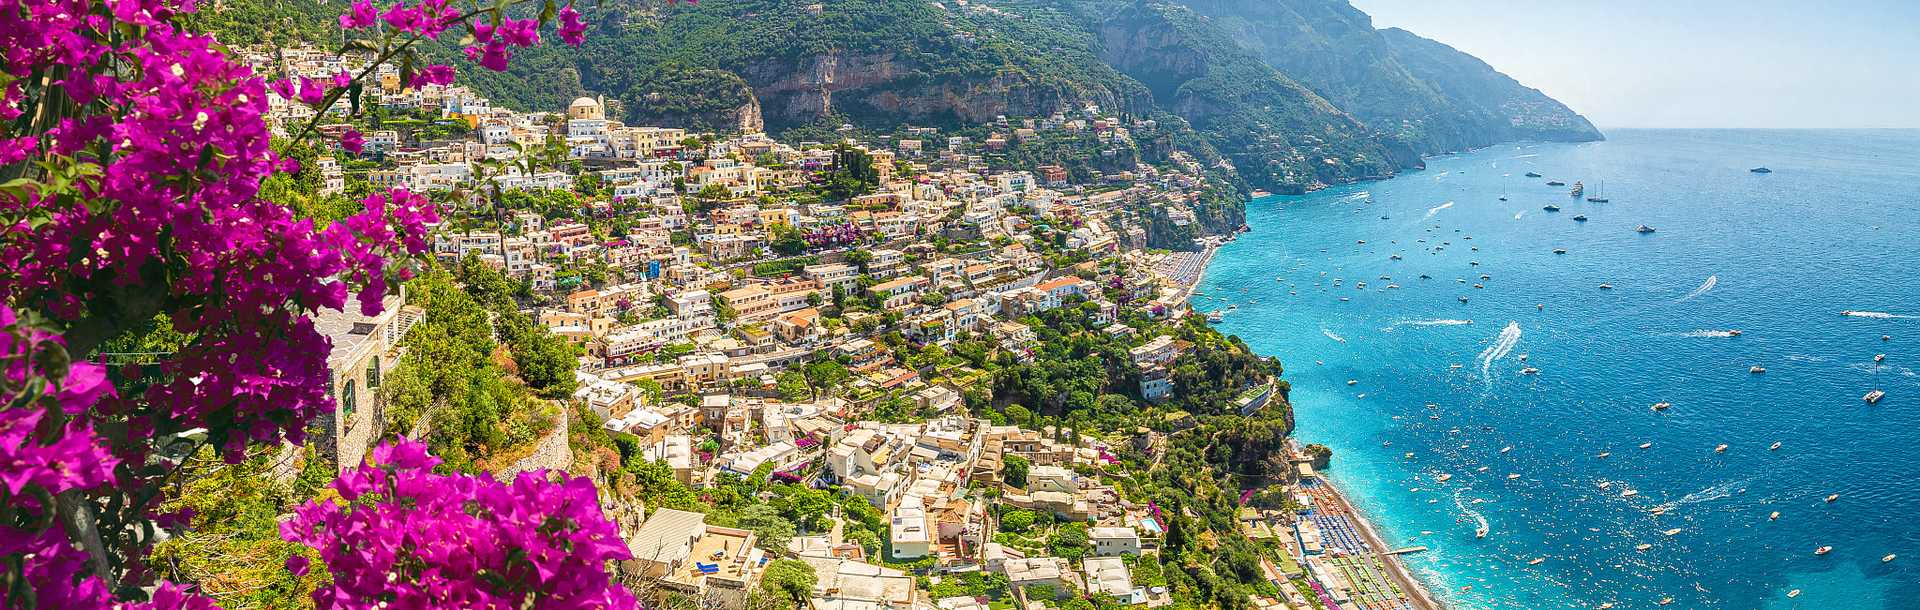 Romantic village of Positano on the Amalfi Coast, Italy